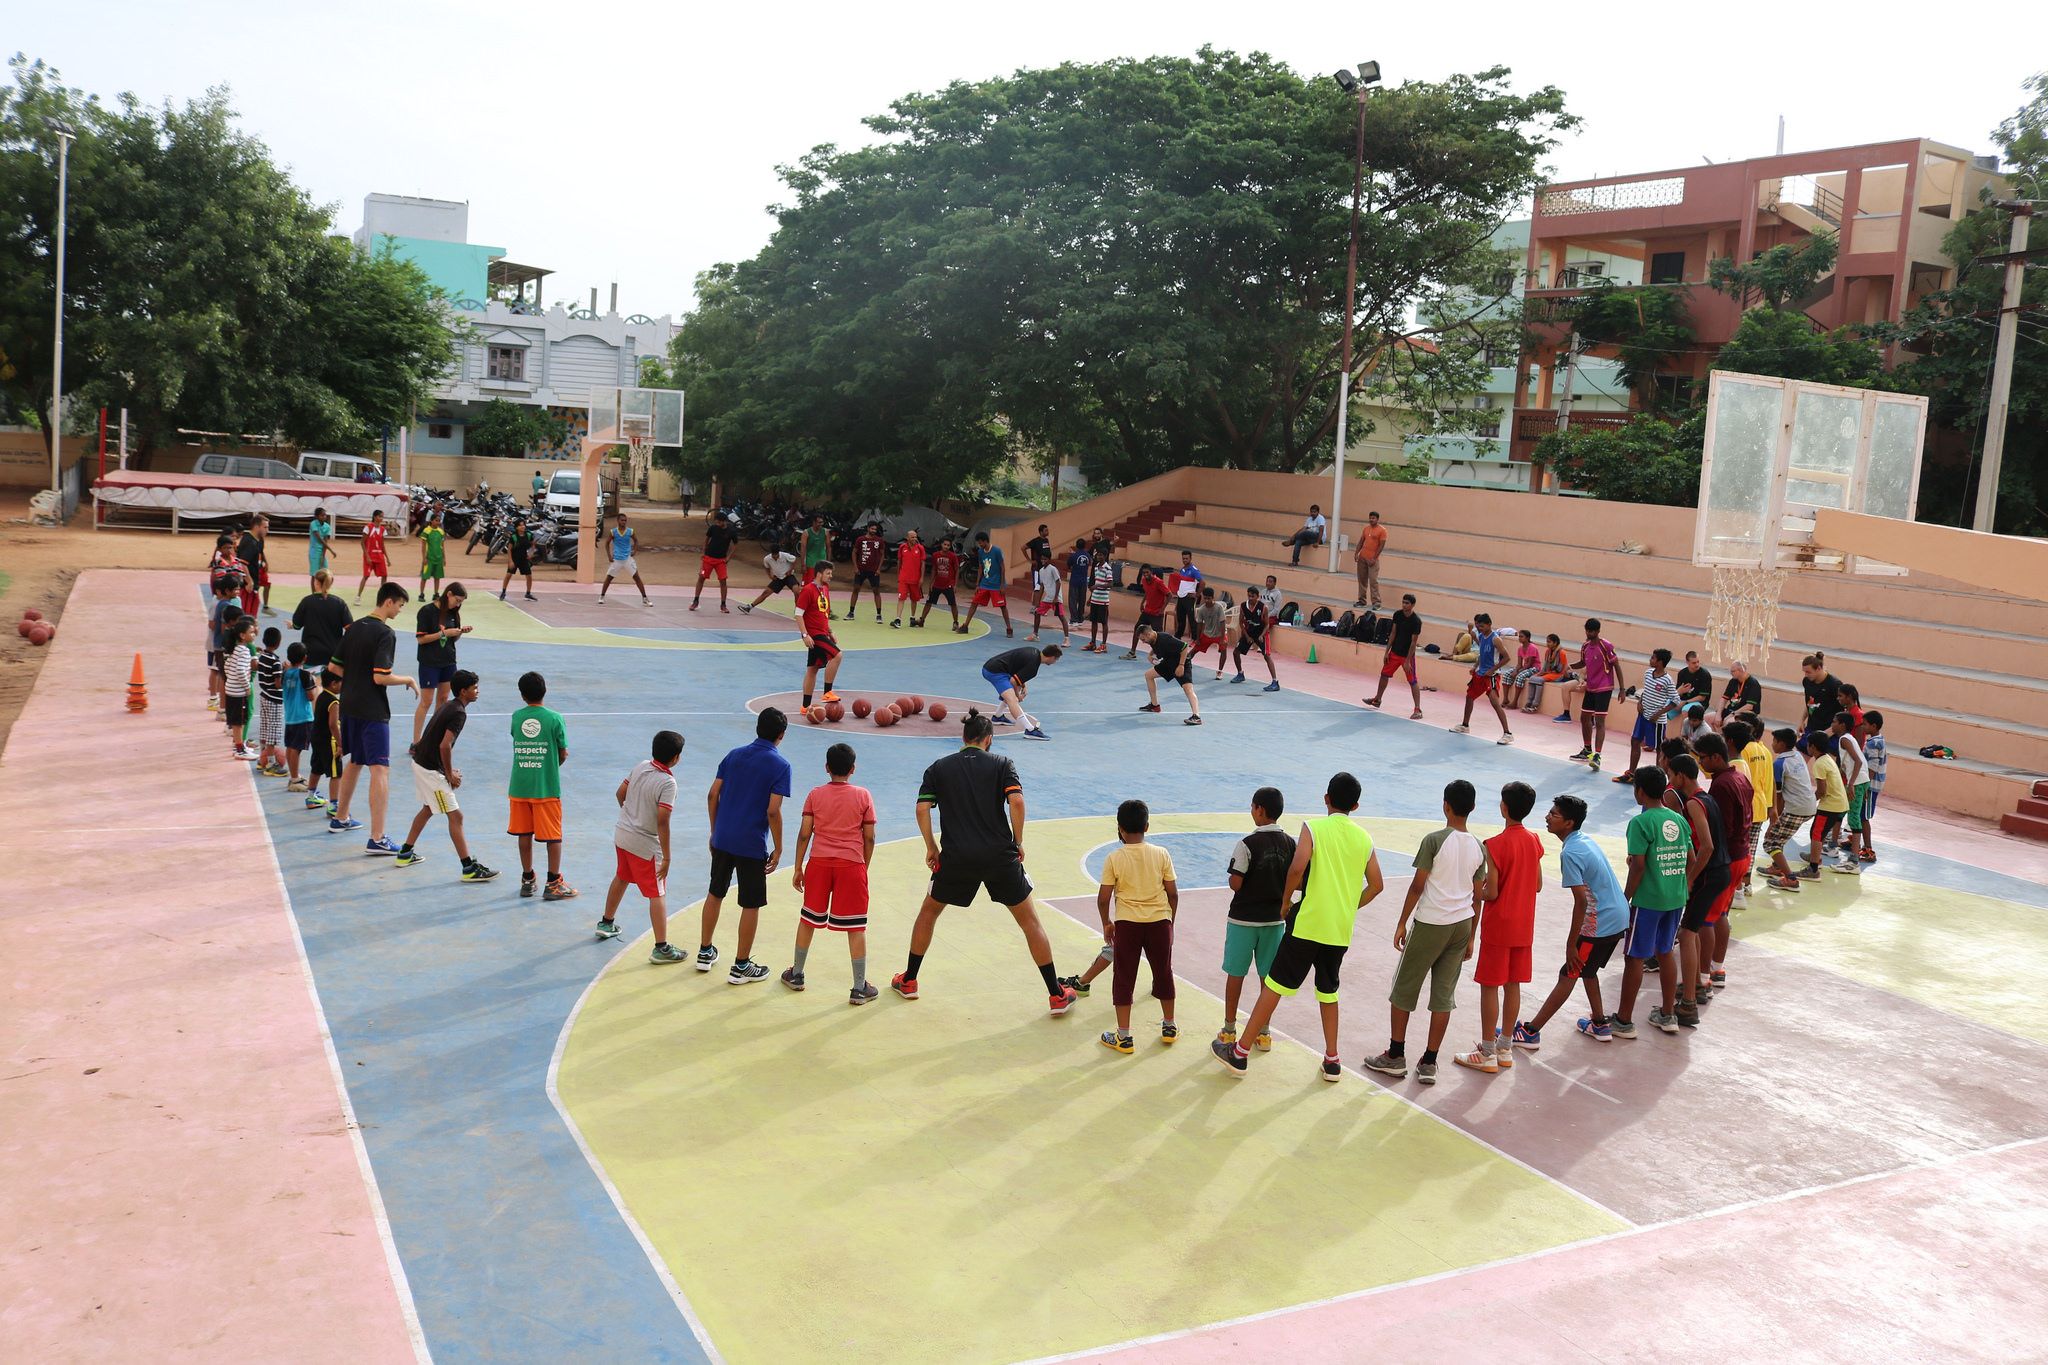 En el 5è Campus Sant Cugat a l'Índia, els entrenadors de bàsquet han arribat a mig miler de jugadors. FOTO: Flickr Campus Sant Cugat a l'India